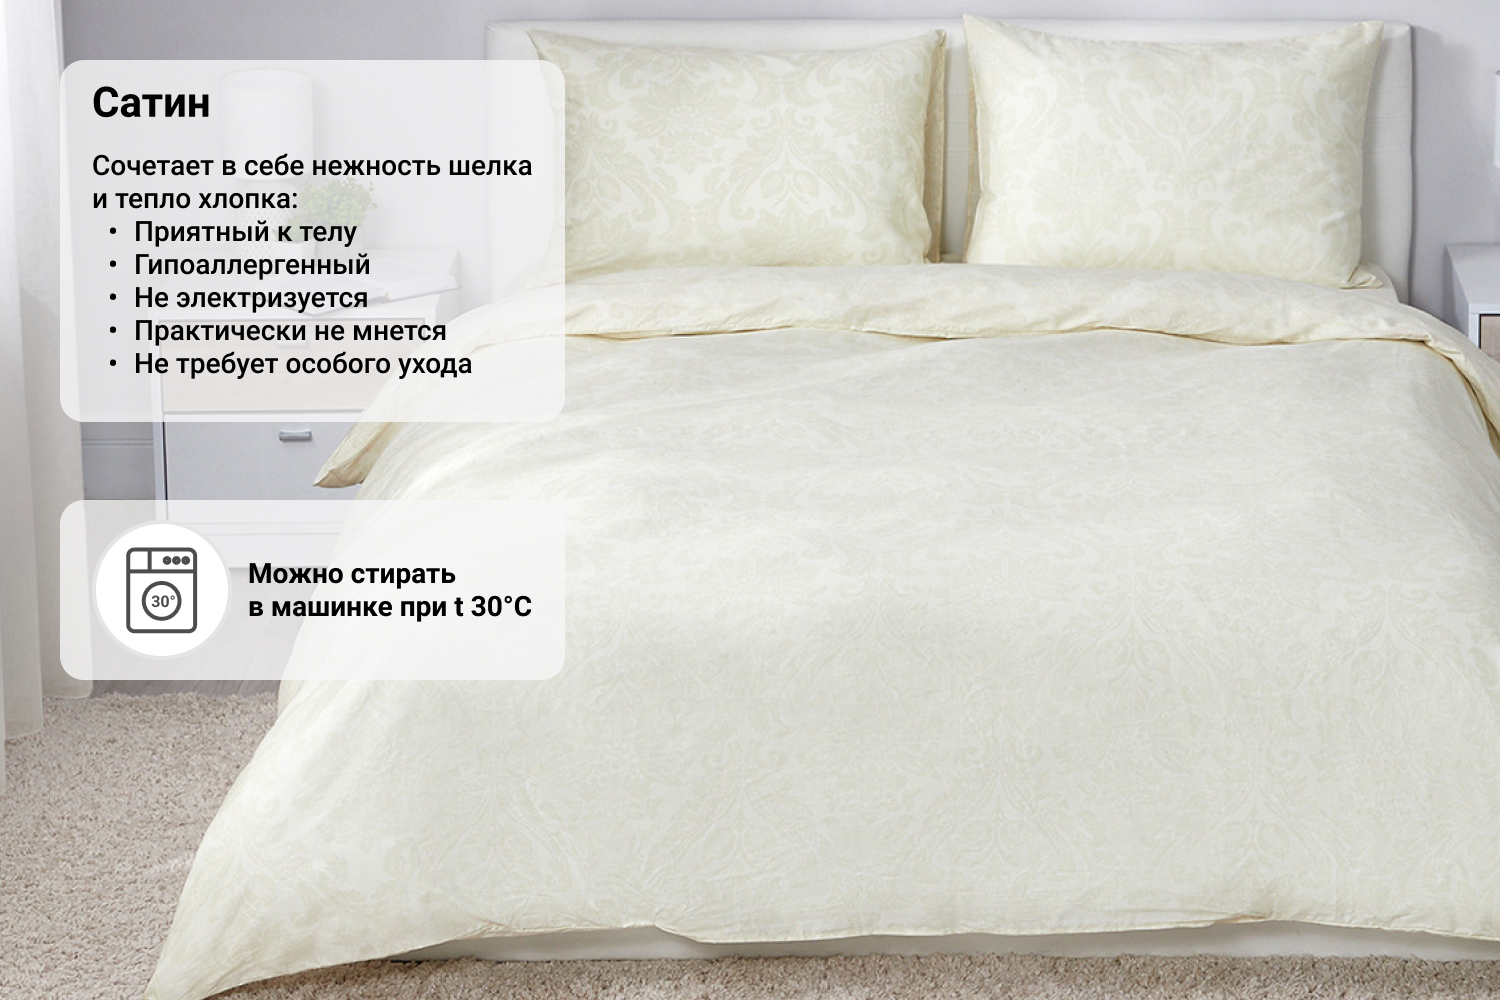 Как определить размер постельного белья для кровати